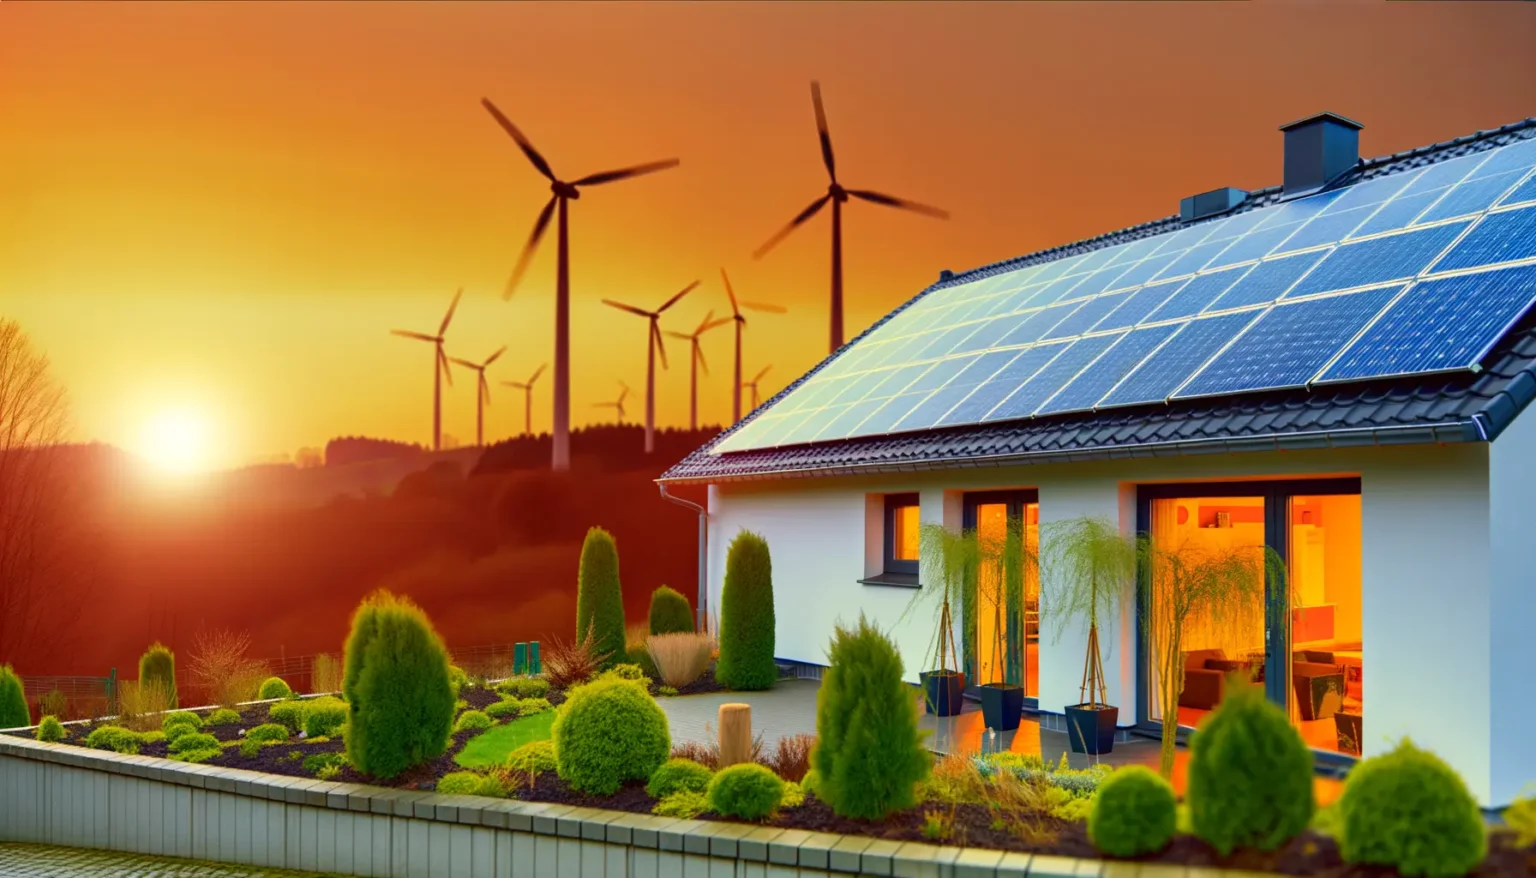 Ein modernes Einfamilienhaus mit Solarpanelen auf dem Dach bei Sonnenuntergang, mit Windrädern im Hintergrund auf einem Hügel, was erneuerbare Energiequellen unterstreicht. Der Vorgarten ist gut gepflegt mit verschiedenen Sträuchern und Pflanzen.